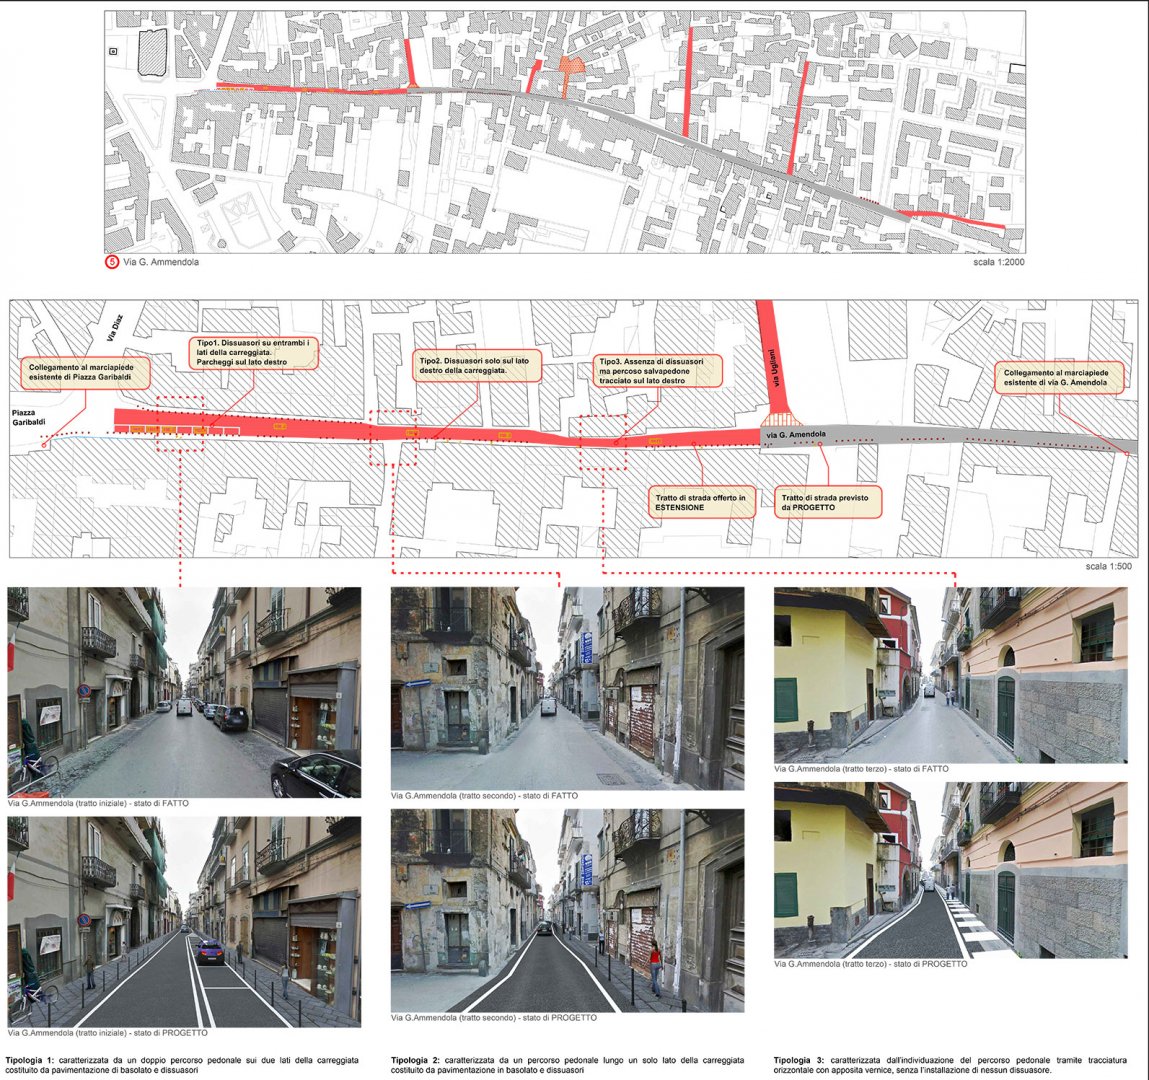 
Manutenzione e riqualificazione delle strade del Comune - San Giuseppe Vesuviano (NA)
